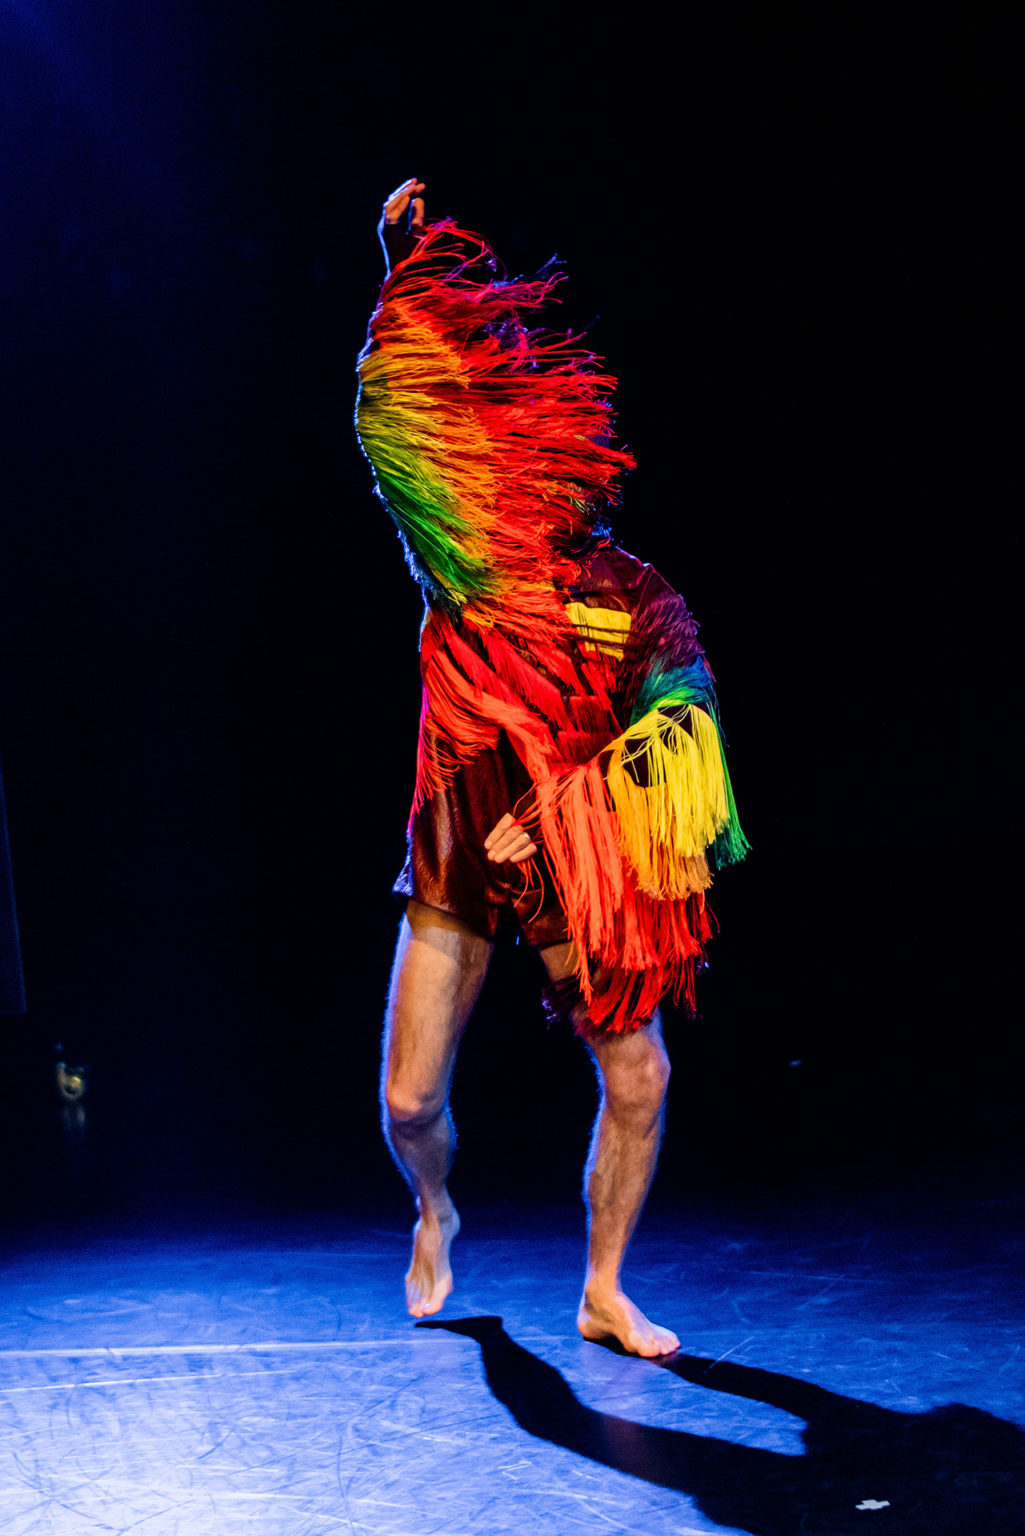 Thierry Smits danse, le bras droit levé. Il porte un costume très coloré, comme des plumes d'oiseau